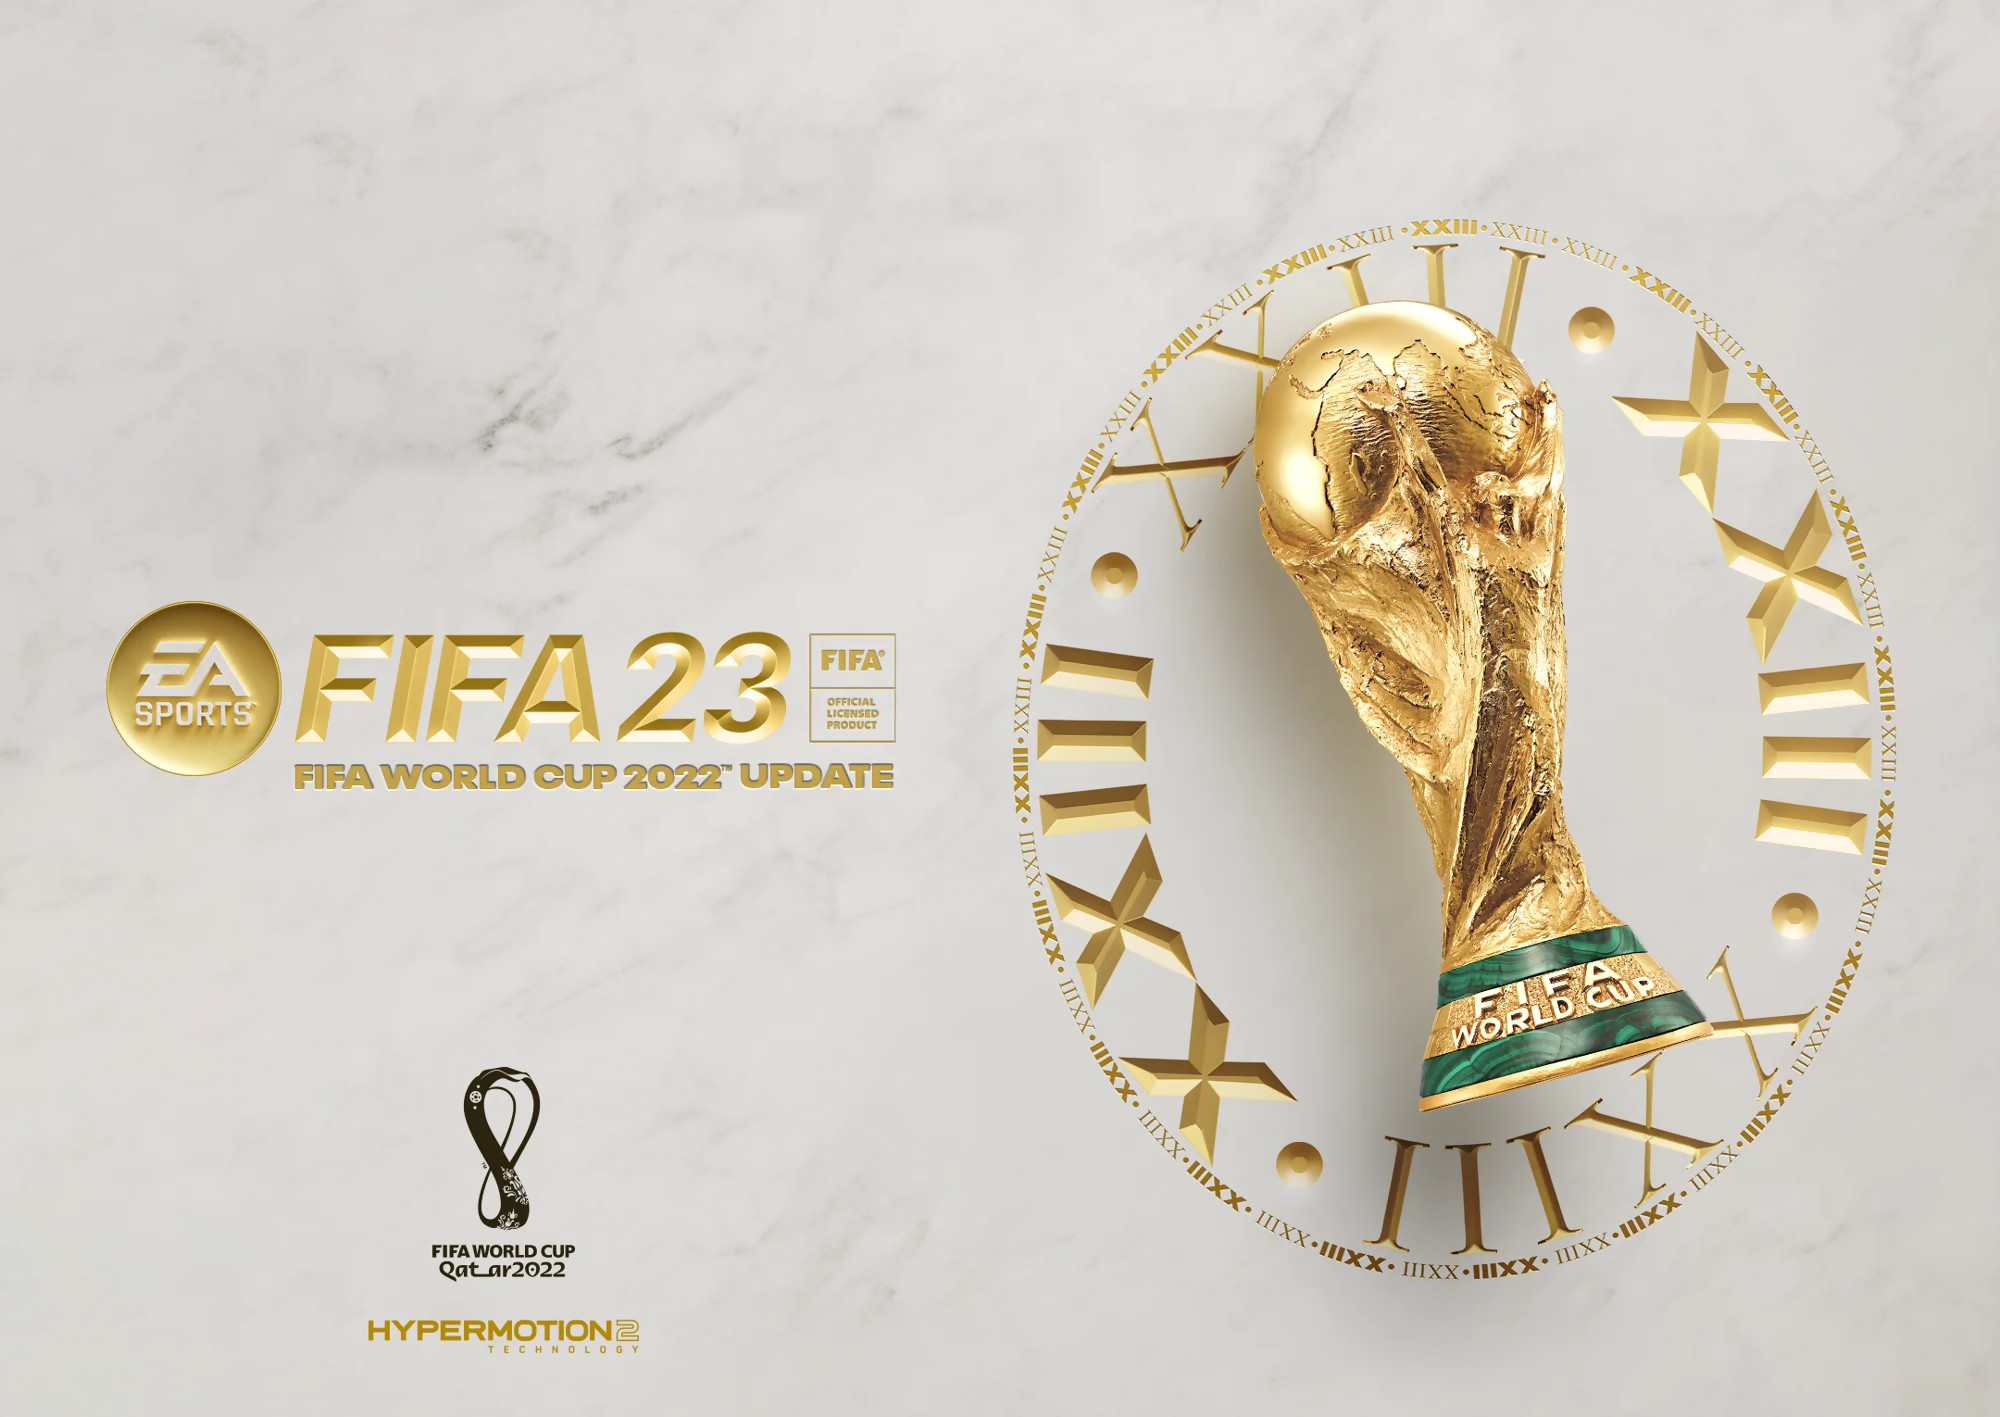 FIFA 23 : une mise à jour pour la Coupe du Monde 2022, voici le trailer